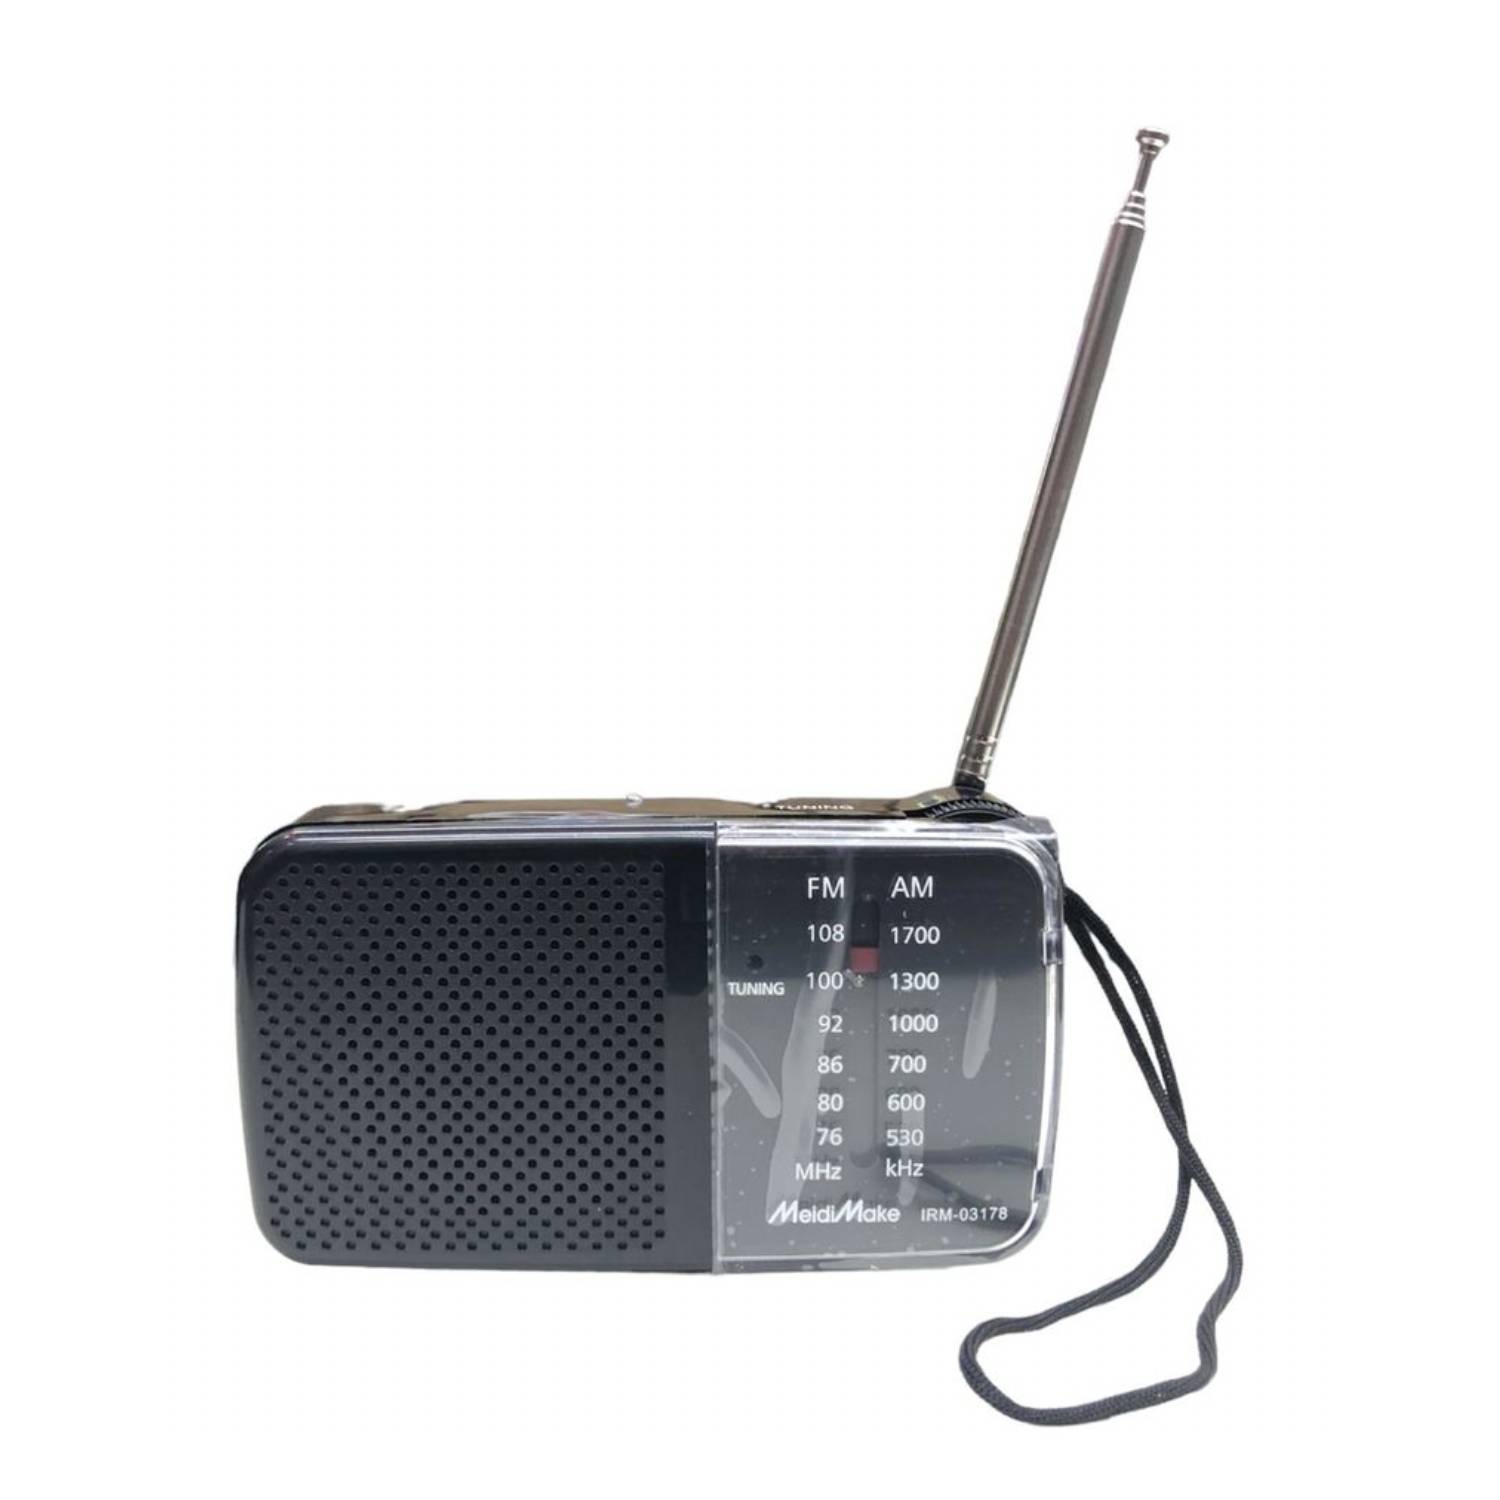 GENERICO Radio A Pilas Fmam Portable De Bolsillo